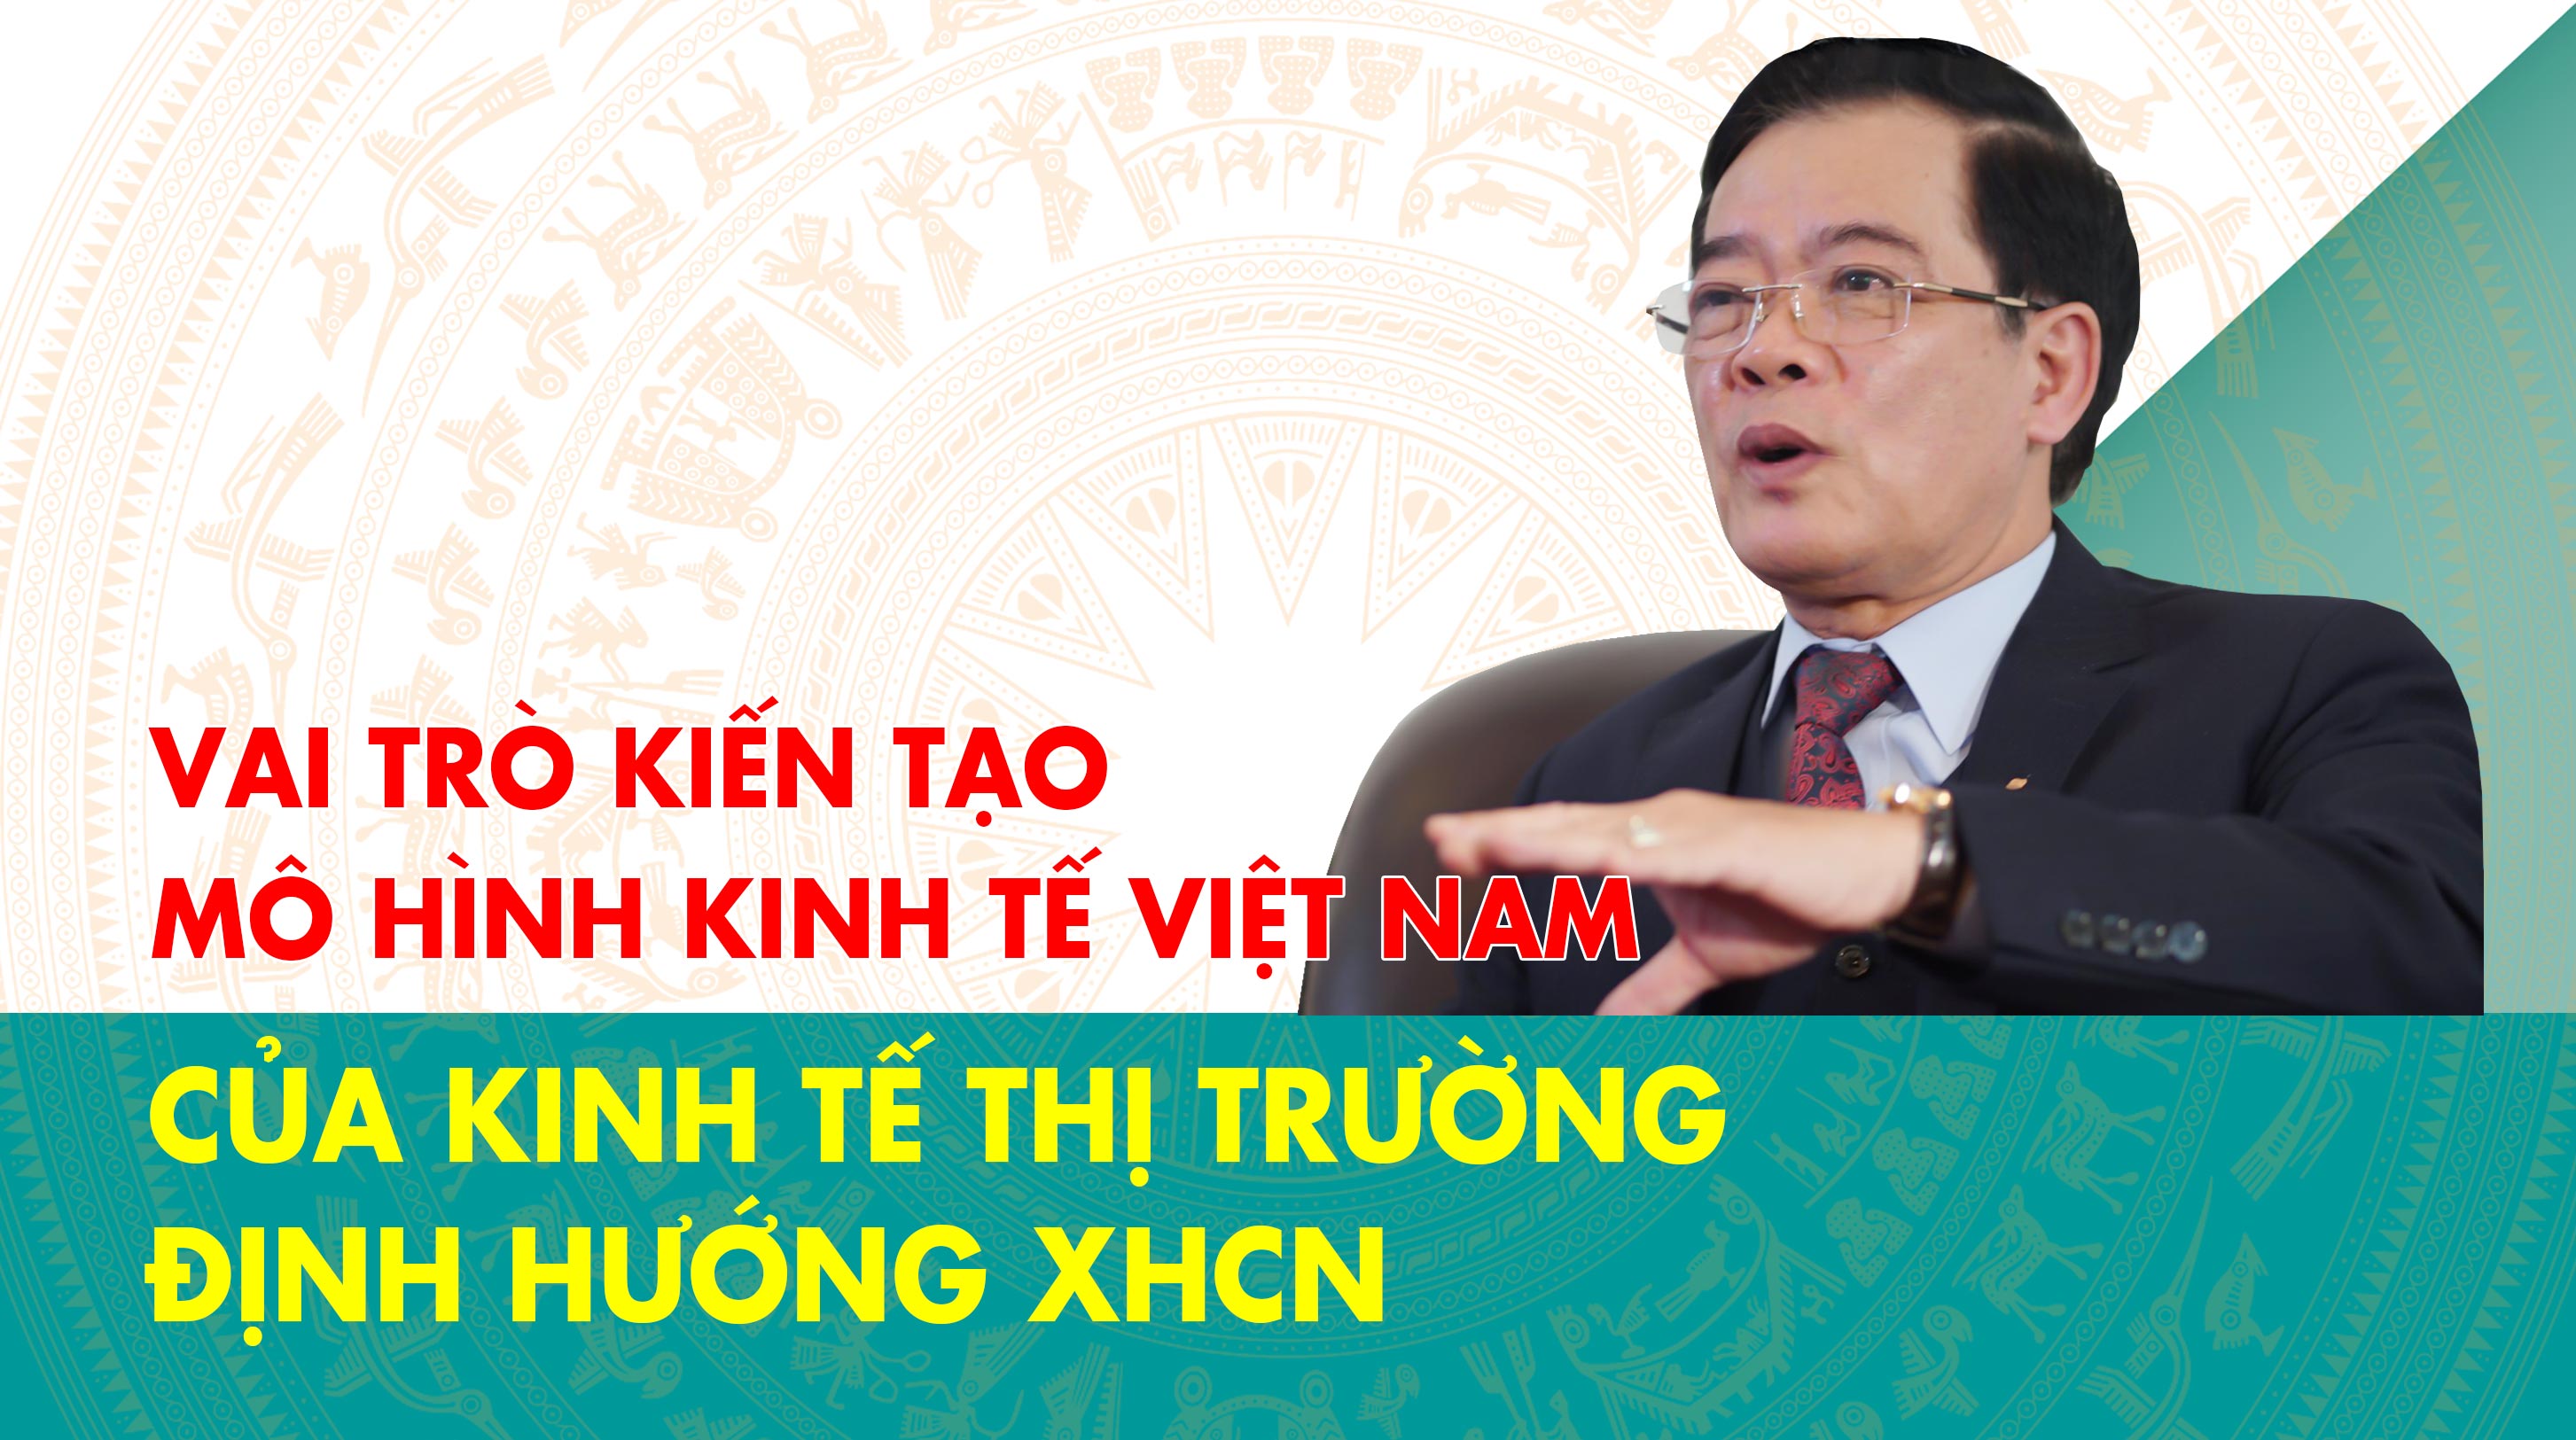 TS Nguyễn Sỹ Dũng Mô hình nhà nước kiến tạo phát triển là tối ưu cho Việt  Nam